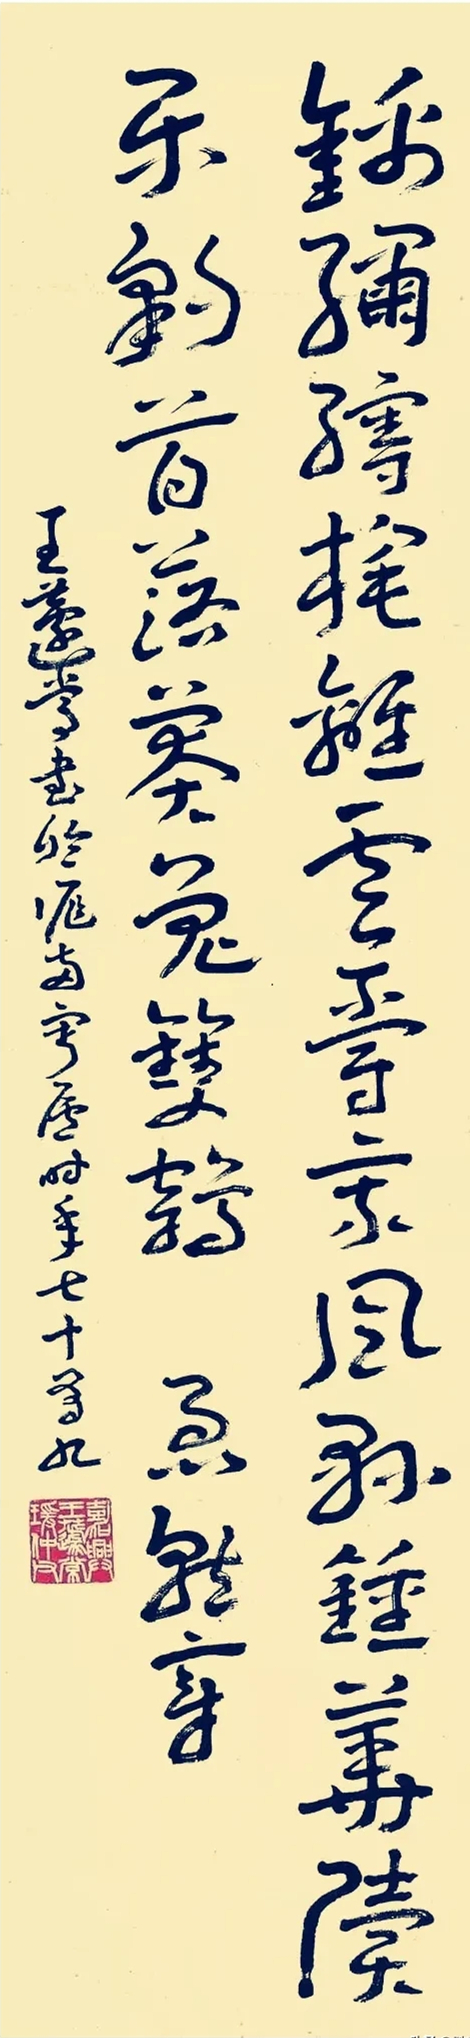 王蘧常章草书法作品欣赏(图5)